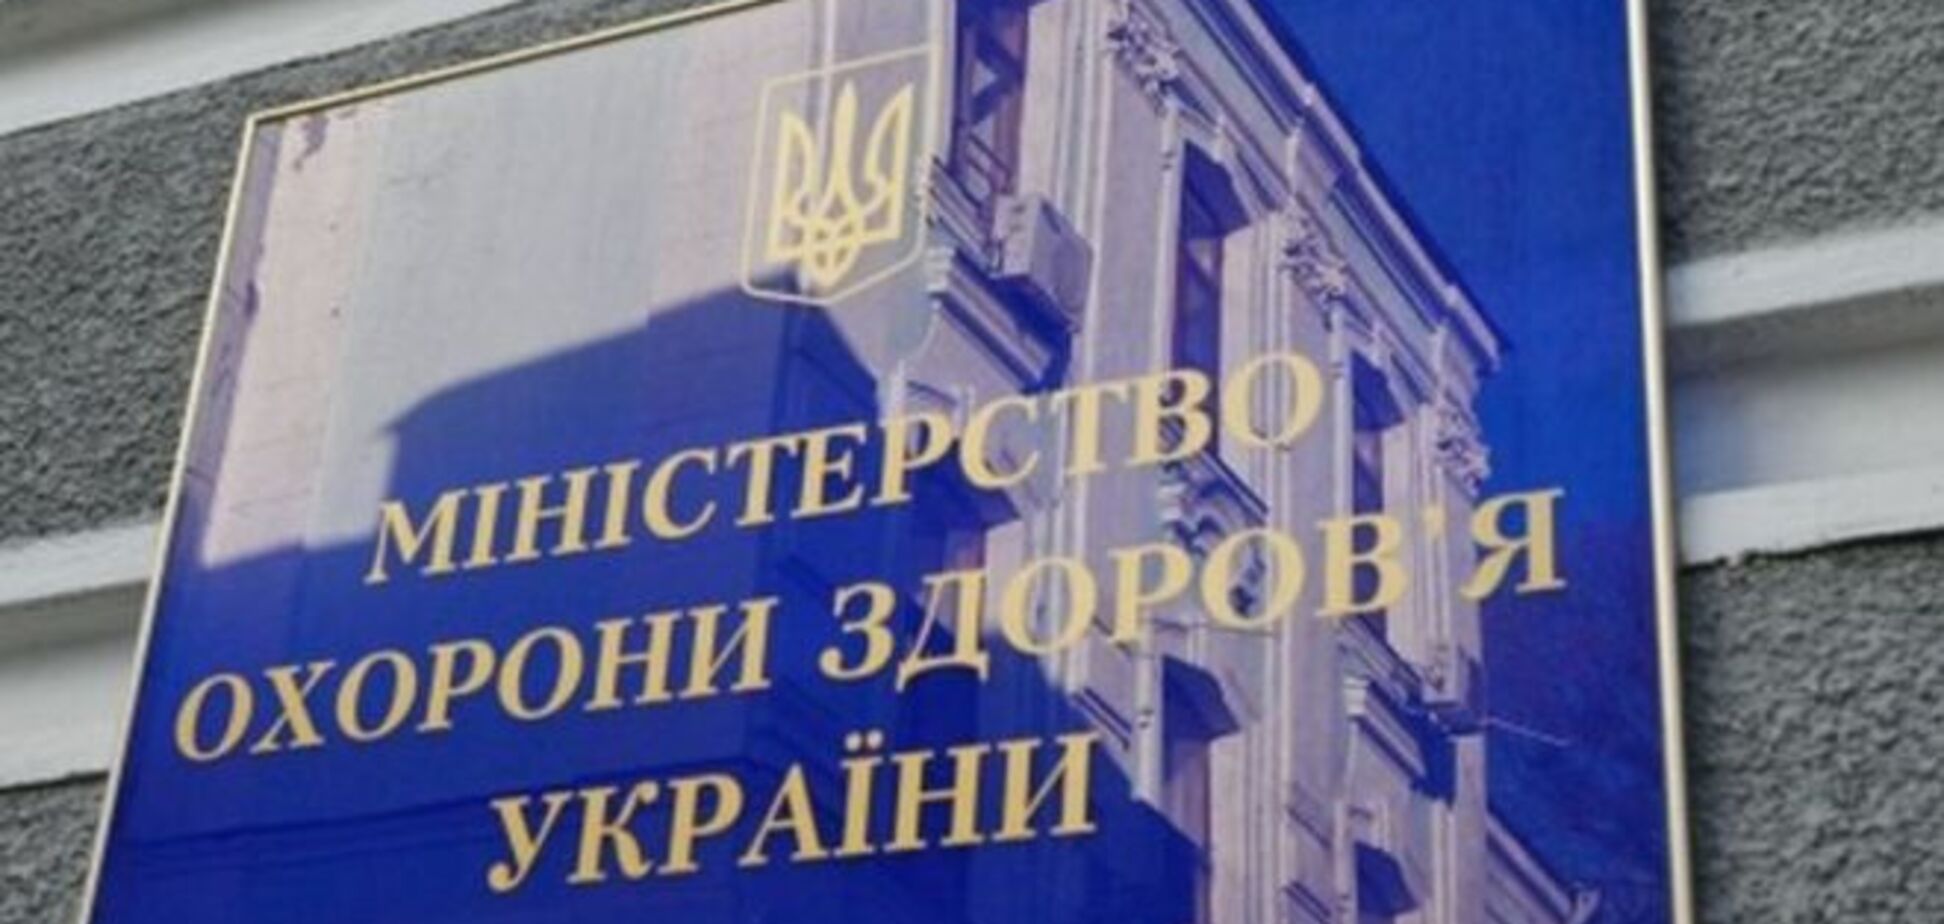 Соратников Януковича заподозрили в попытке взять под контроль Минздрав